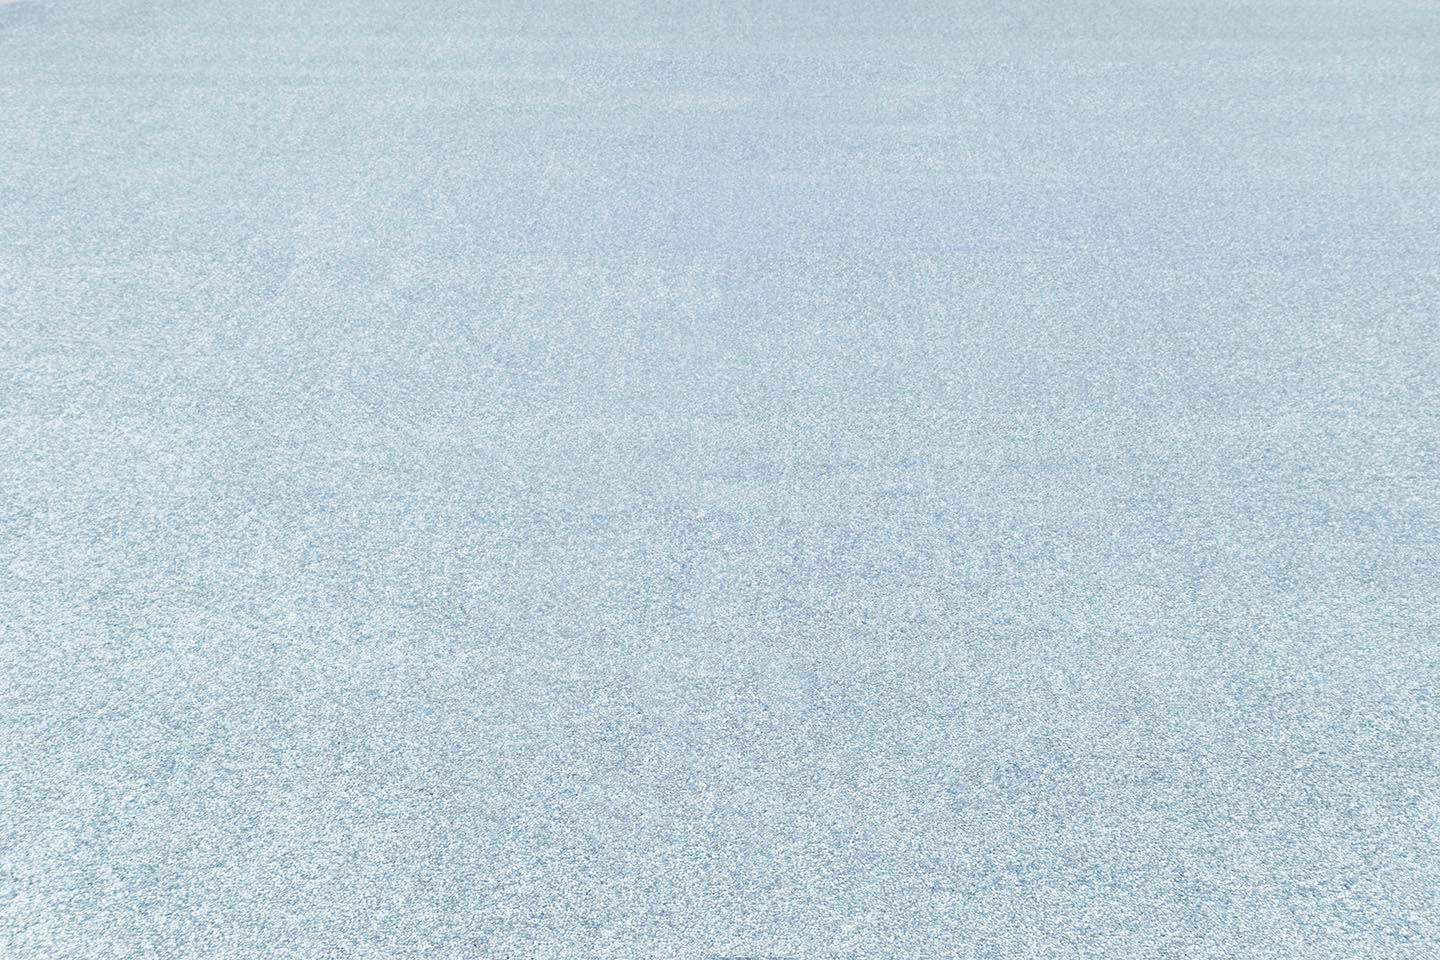 Metrážny koberec OMNIA modrý